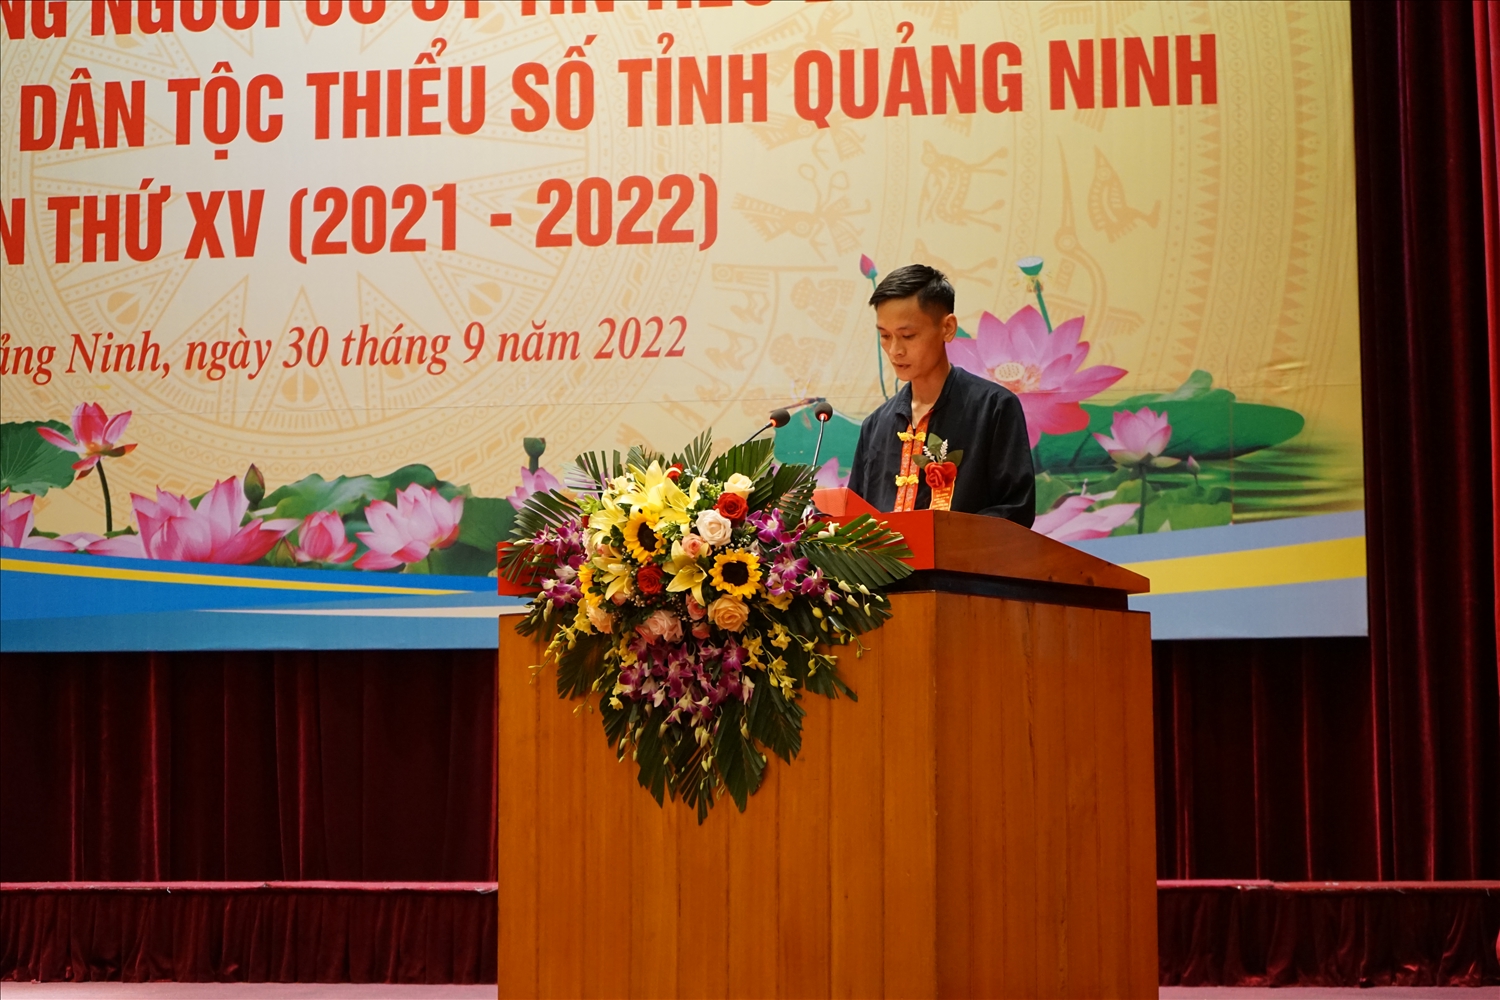 Anh Lỷ Văn Thắng phát biểu tham luận tại Hội nghị biểu dương Người có uy tín tiêu biểu trong đồng bào DTTS tỉnh Quảng Ninh lần thứ XV (2021 - 2022)